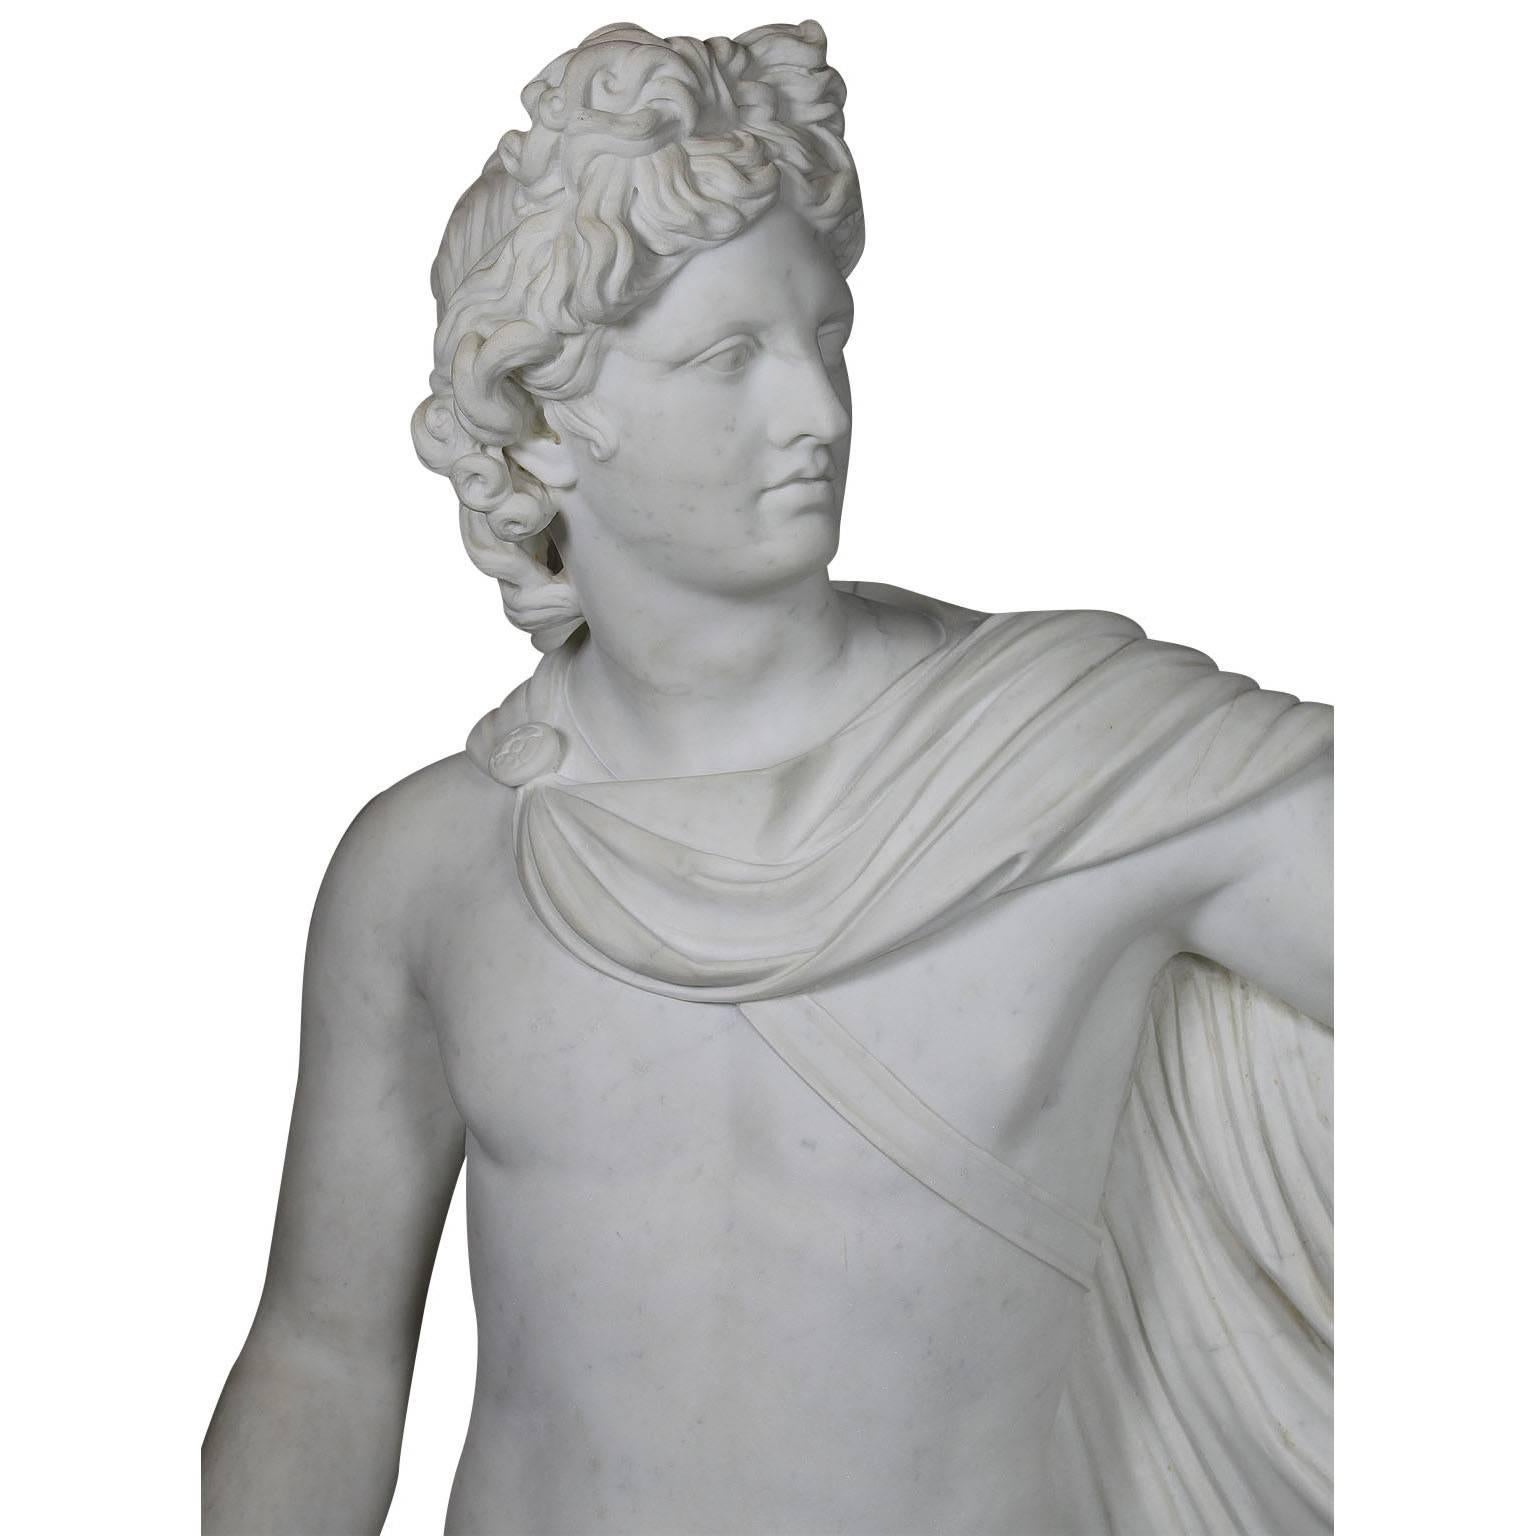 Ferdinando Vichi (italien, 1875-1945) Figure gréco-romaine en marbre blanc de Carrare de belle facture et de taille réelle représentant l'Apollon du Belvedere. D'après l'original, aujourd'hui conservé au musée du Vatican, l'Apollon du Belvedere a